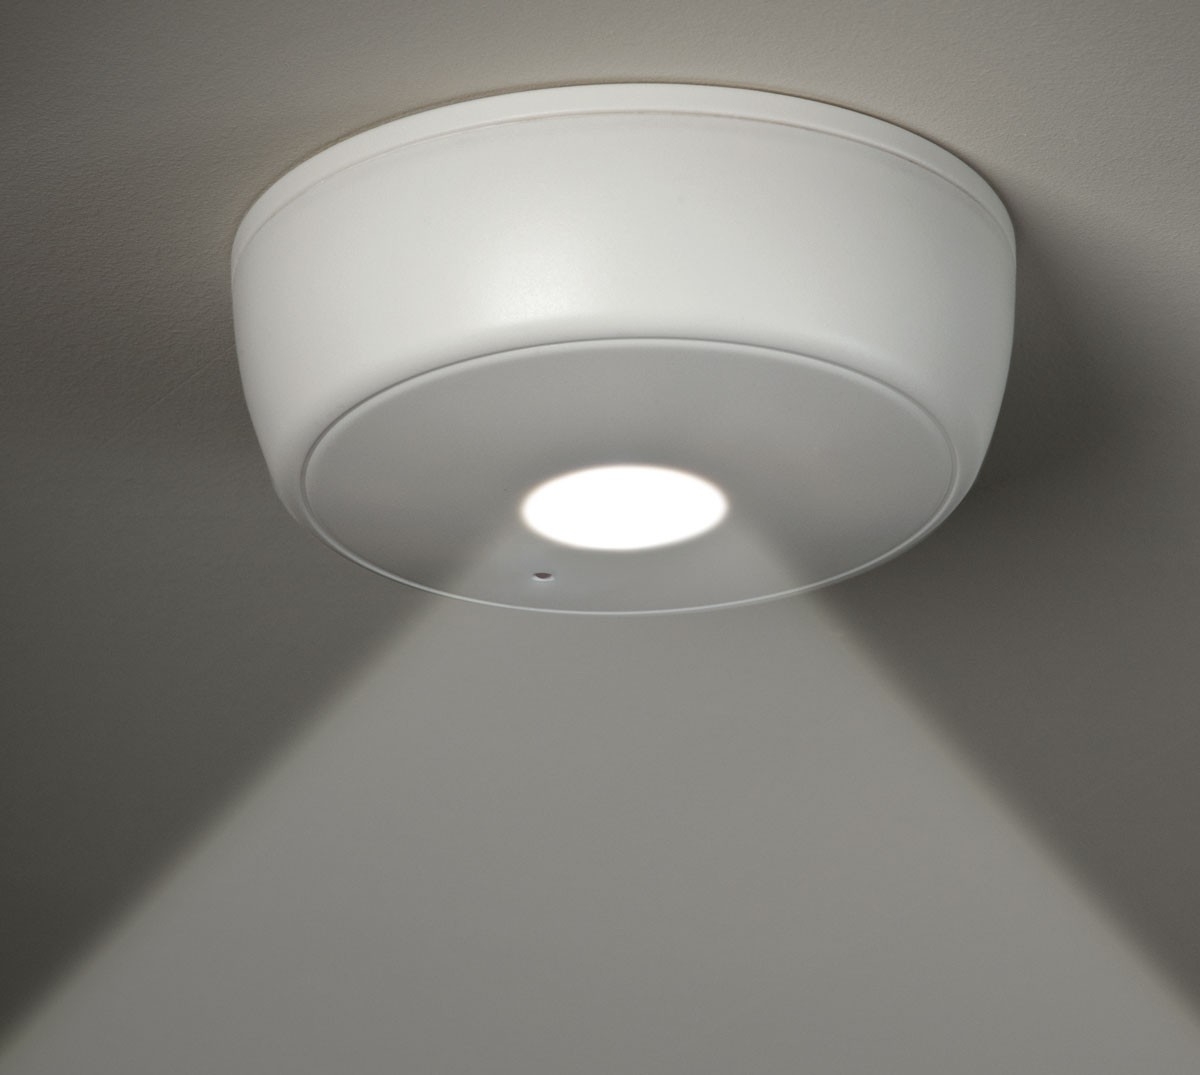 Wireless Ceiling Light Fixture